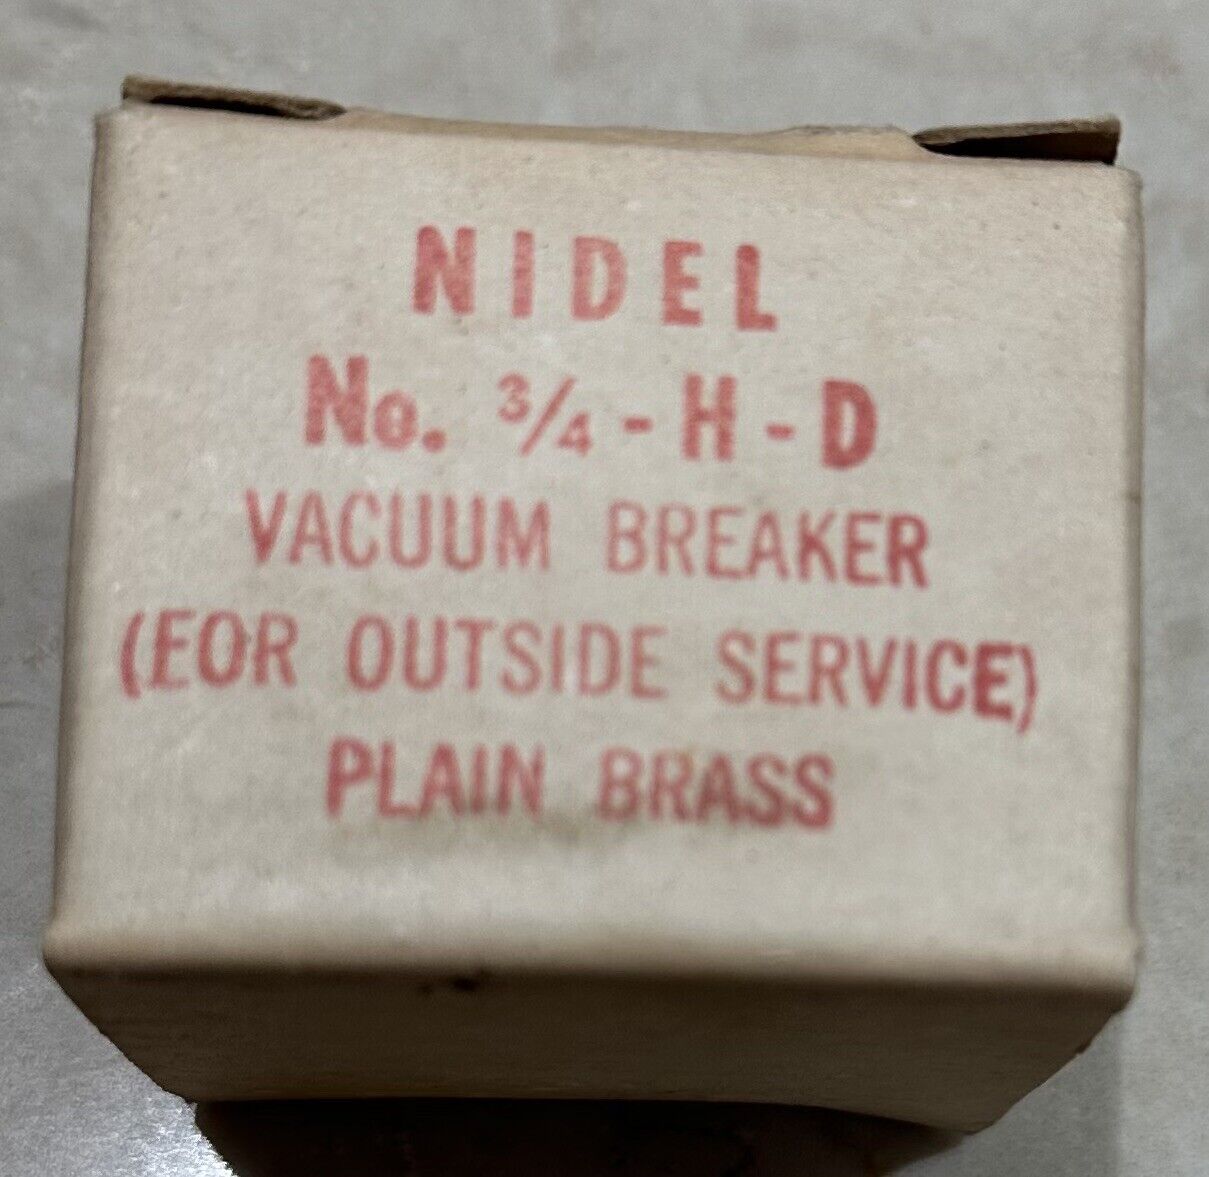 nidel brass vacuum breakers